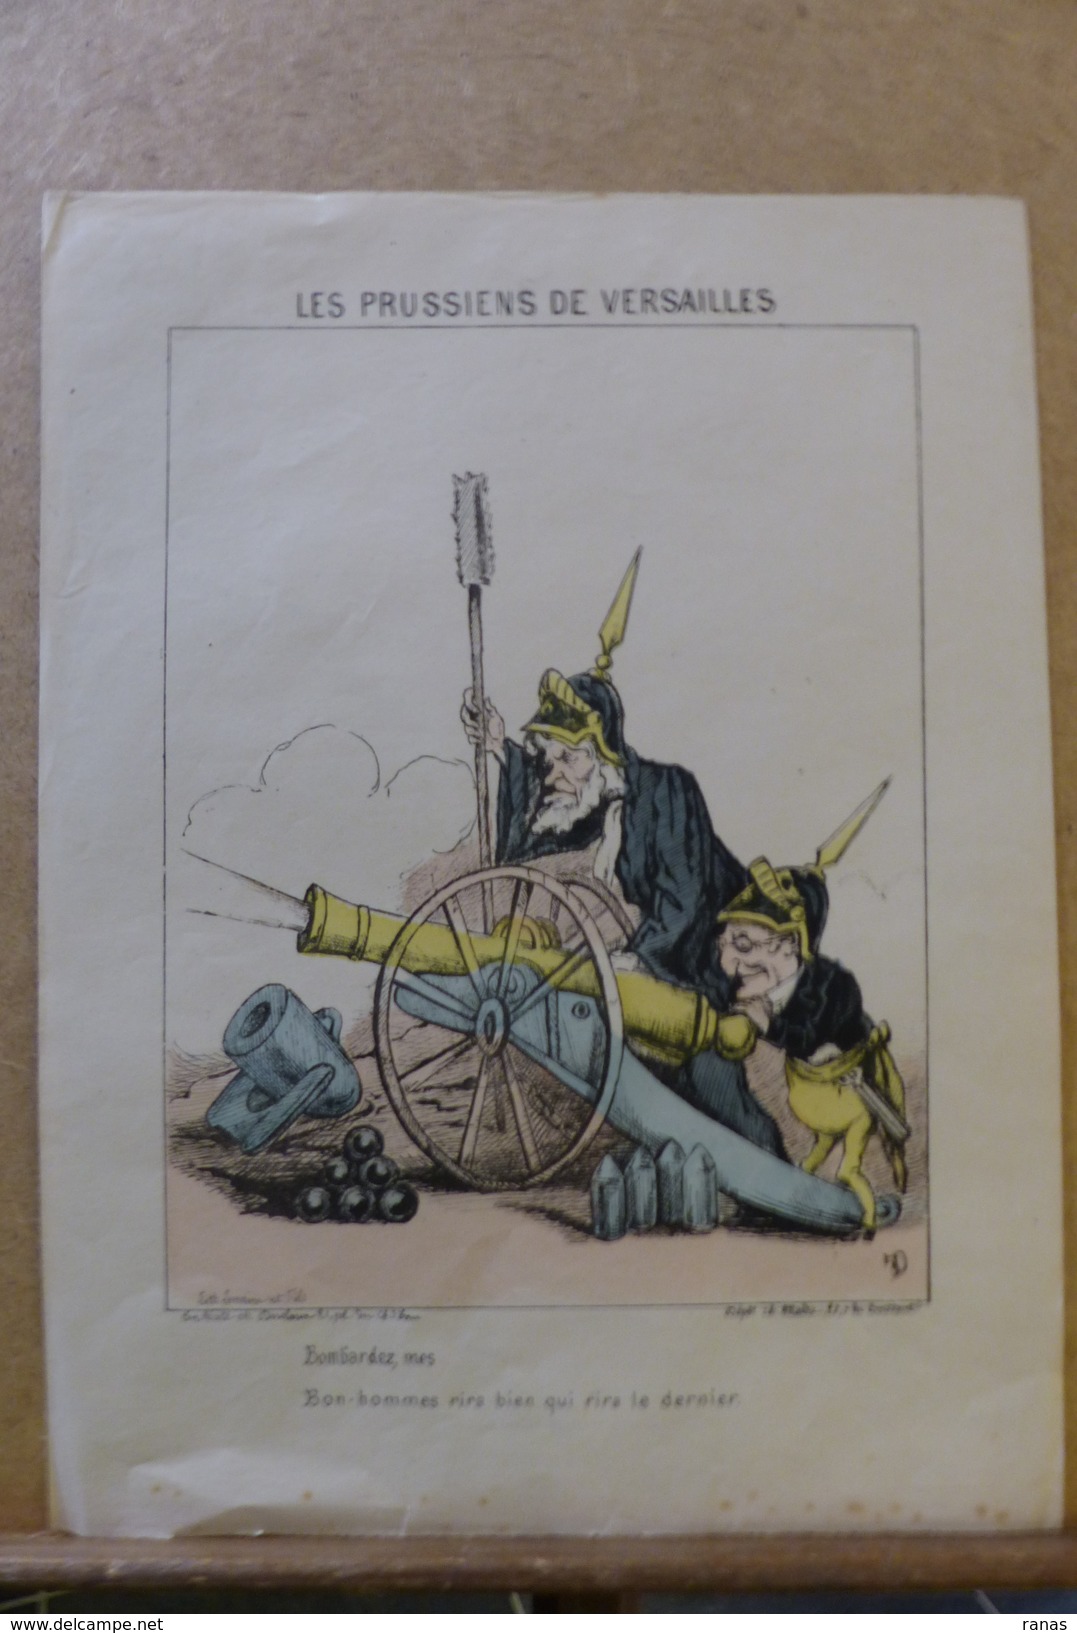 Estampe Gravure Satirique Caricature D'époque 1870  La Commune De Paris Auguste THIERS FAVRE 32,5 X 24,5 - Stiche & Gravuren